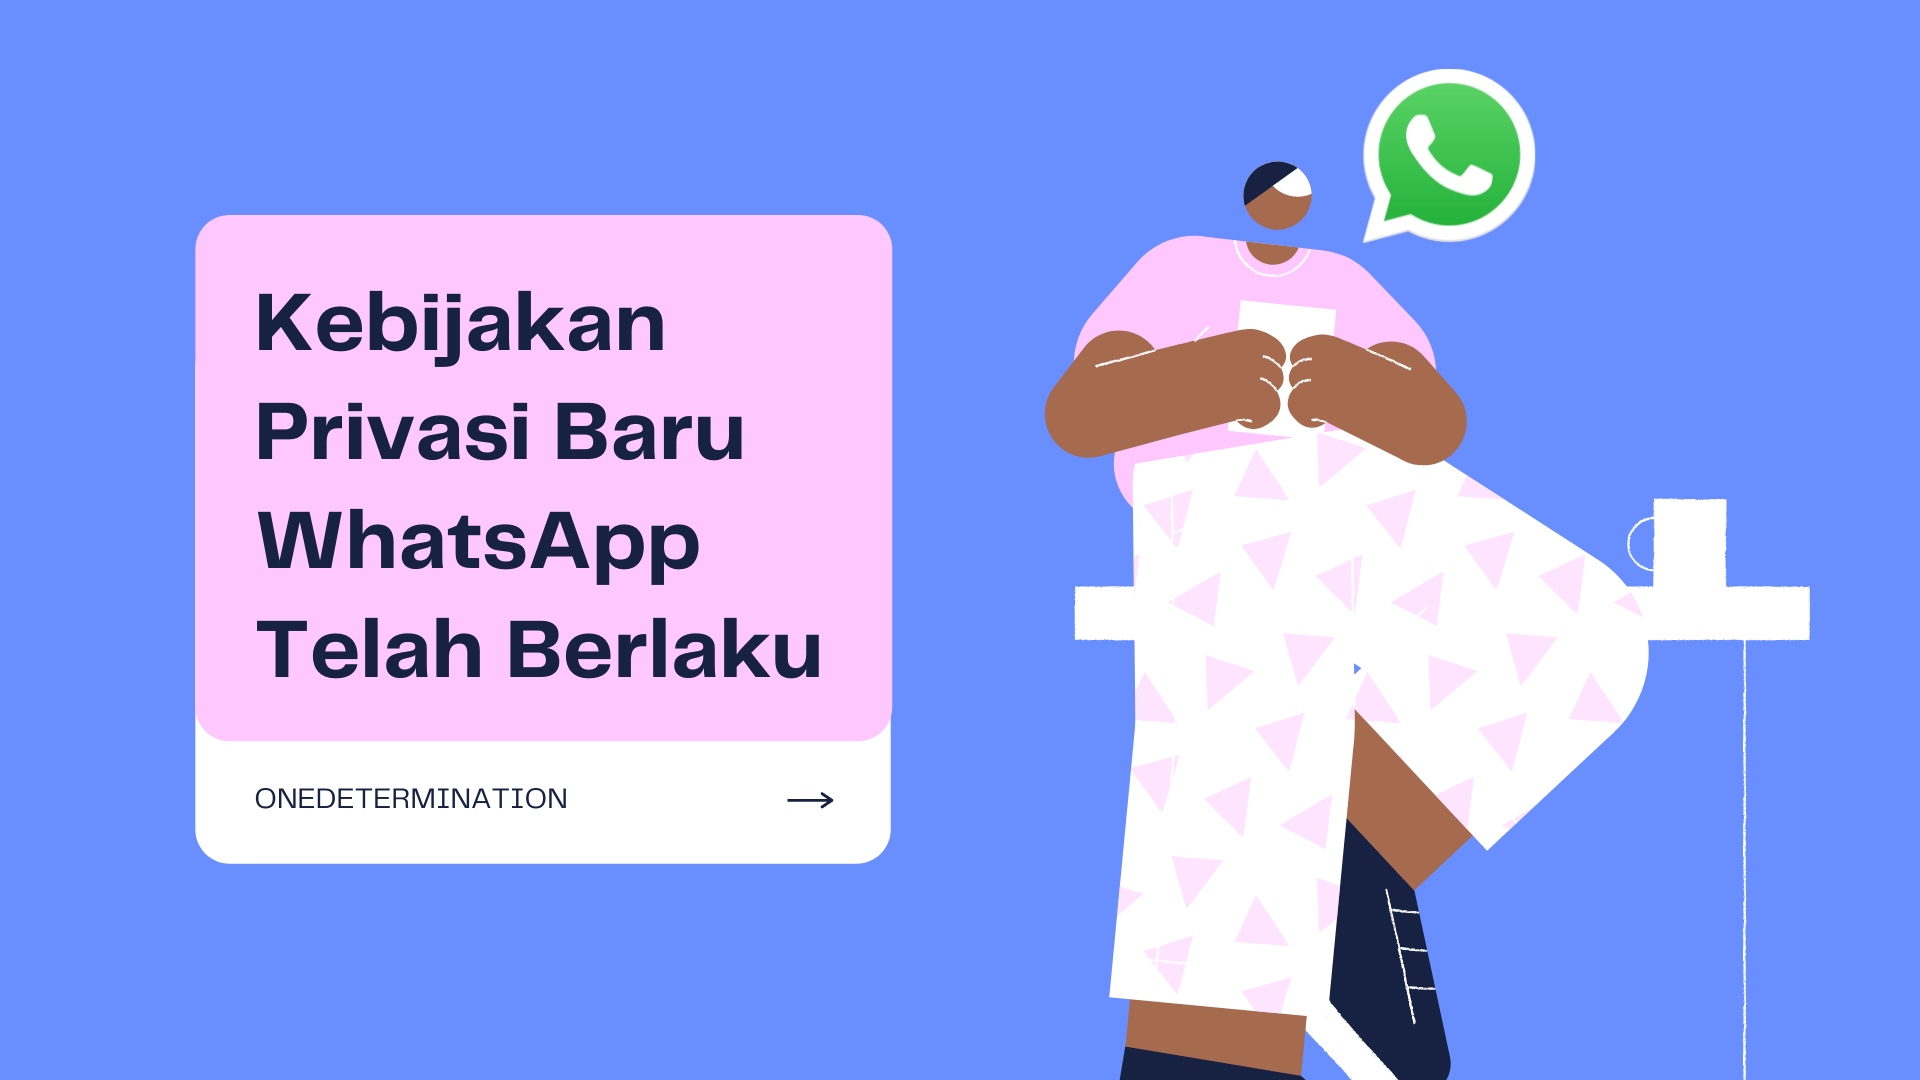 Kebijakan Privasi Baru WhatsApp